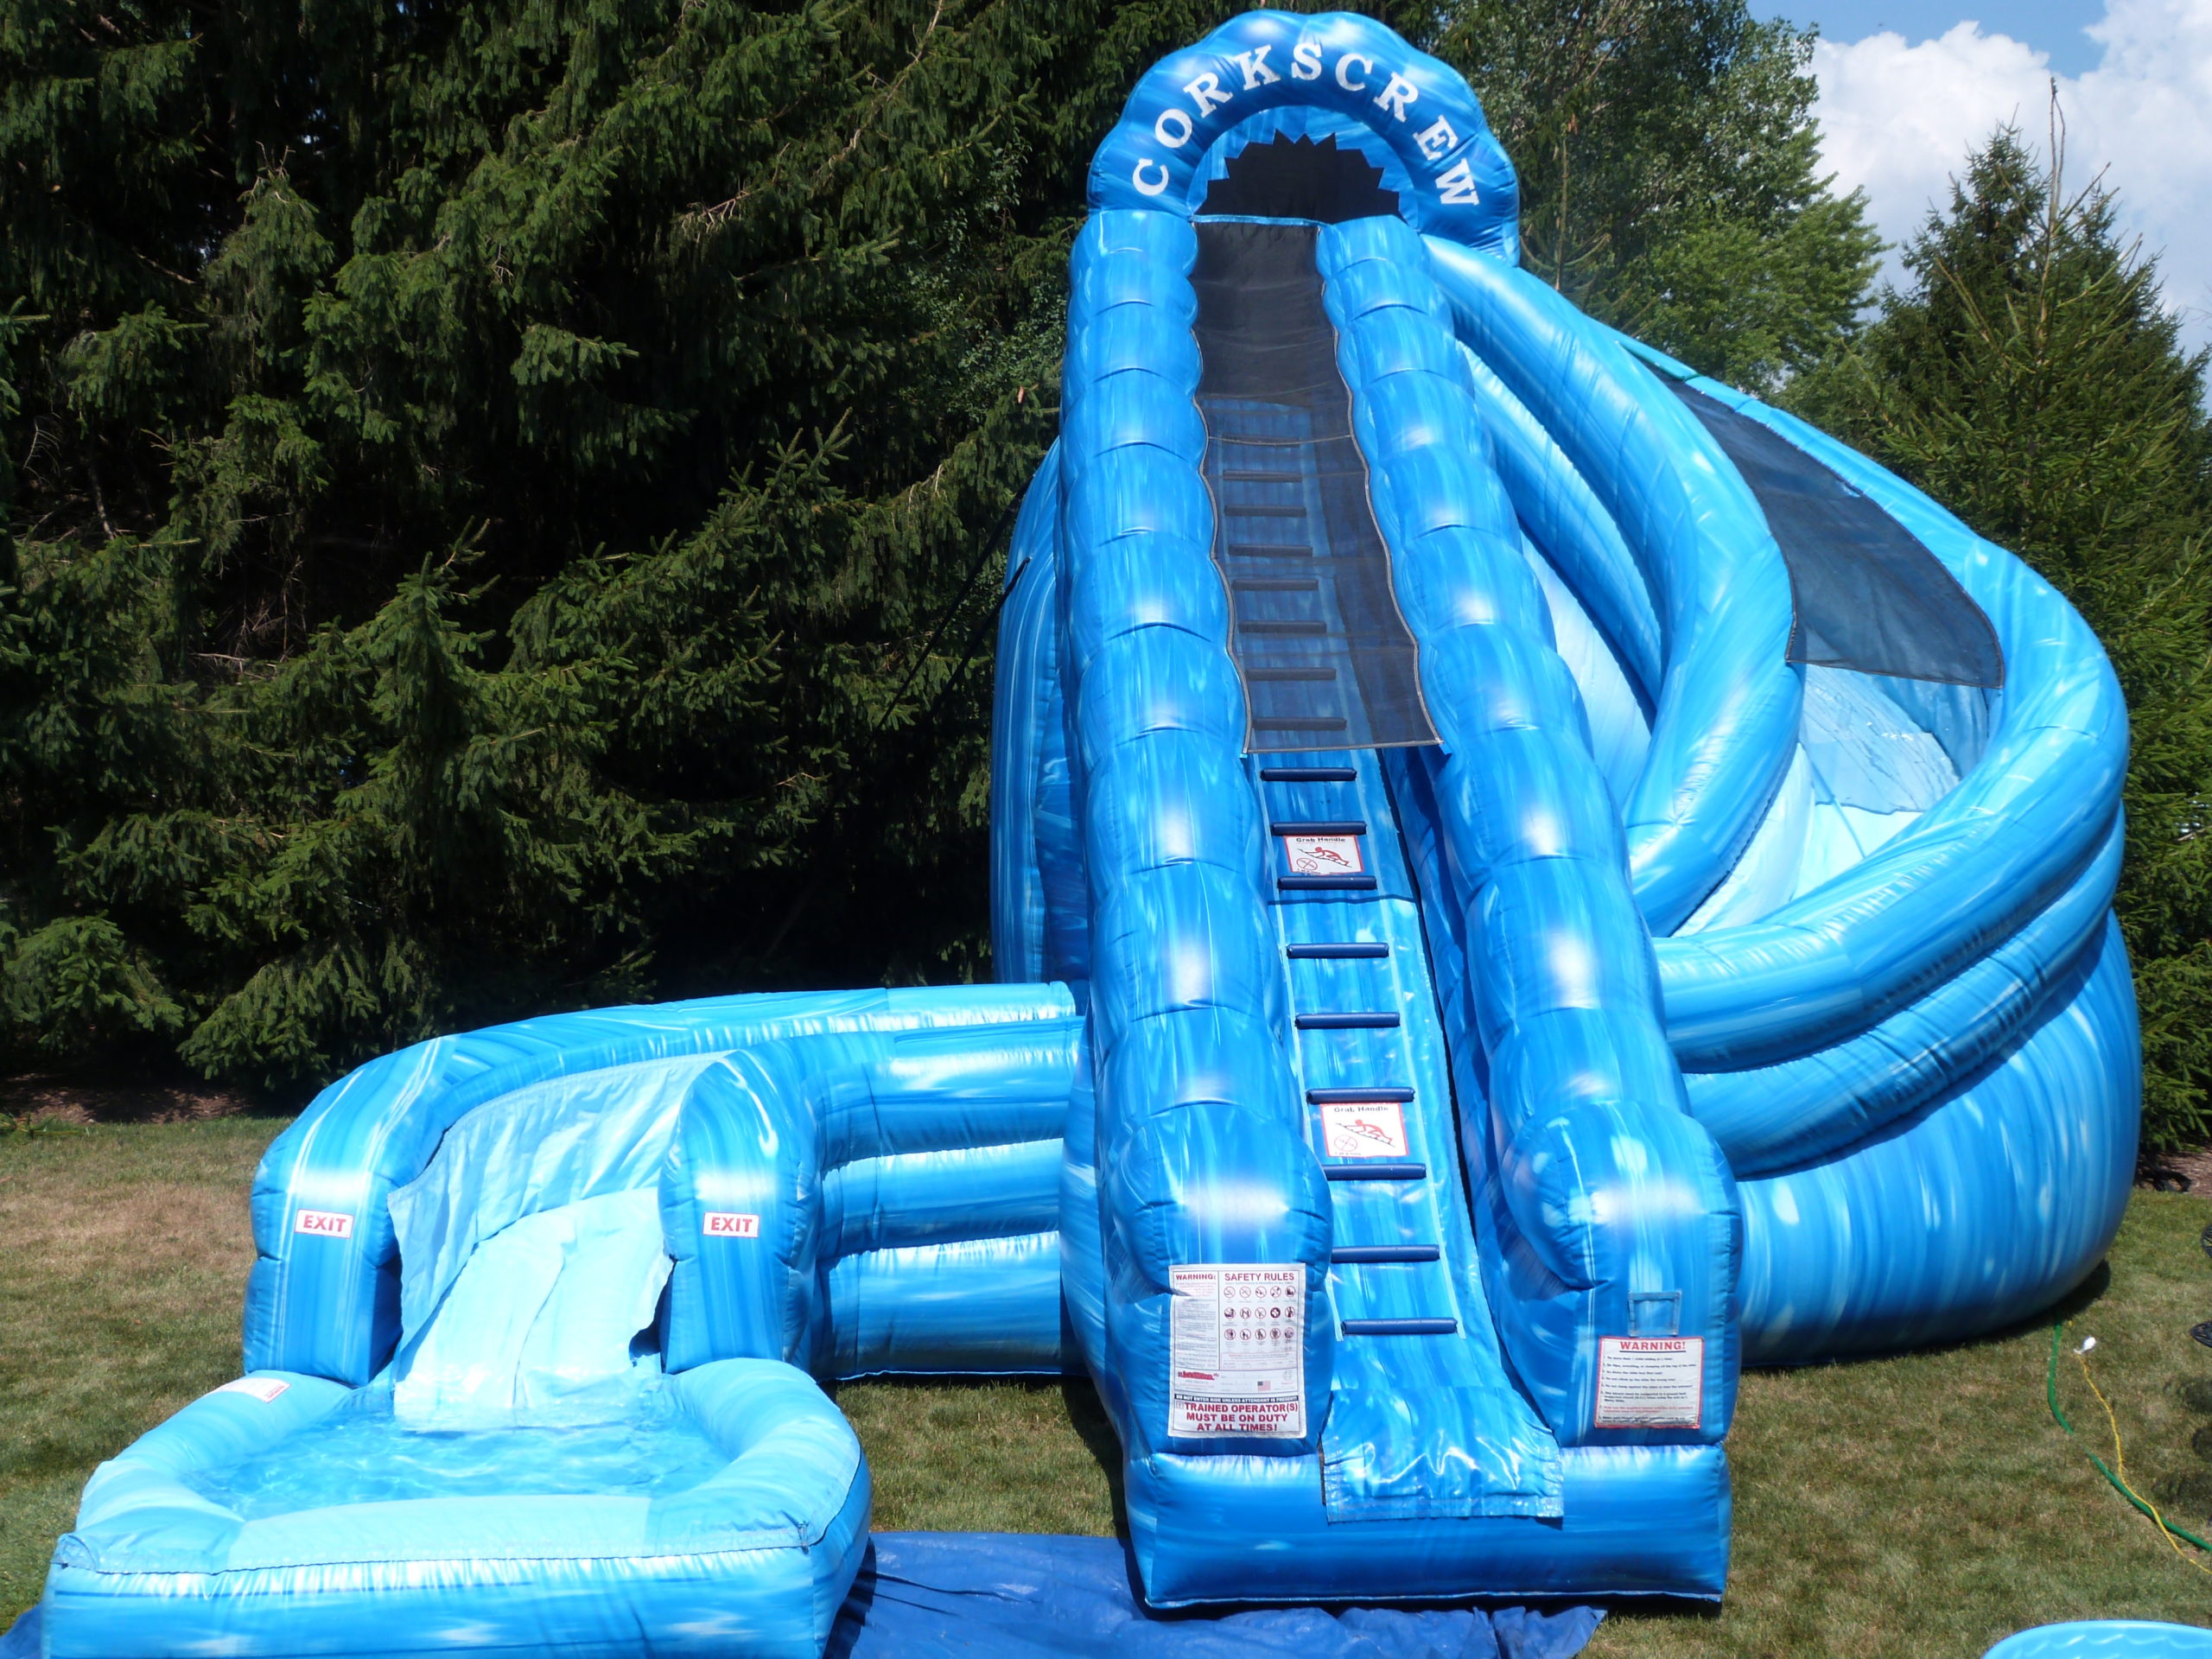 Naperville Water Slide Rental - The Fun Ones